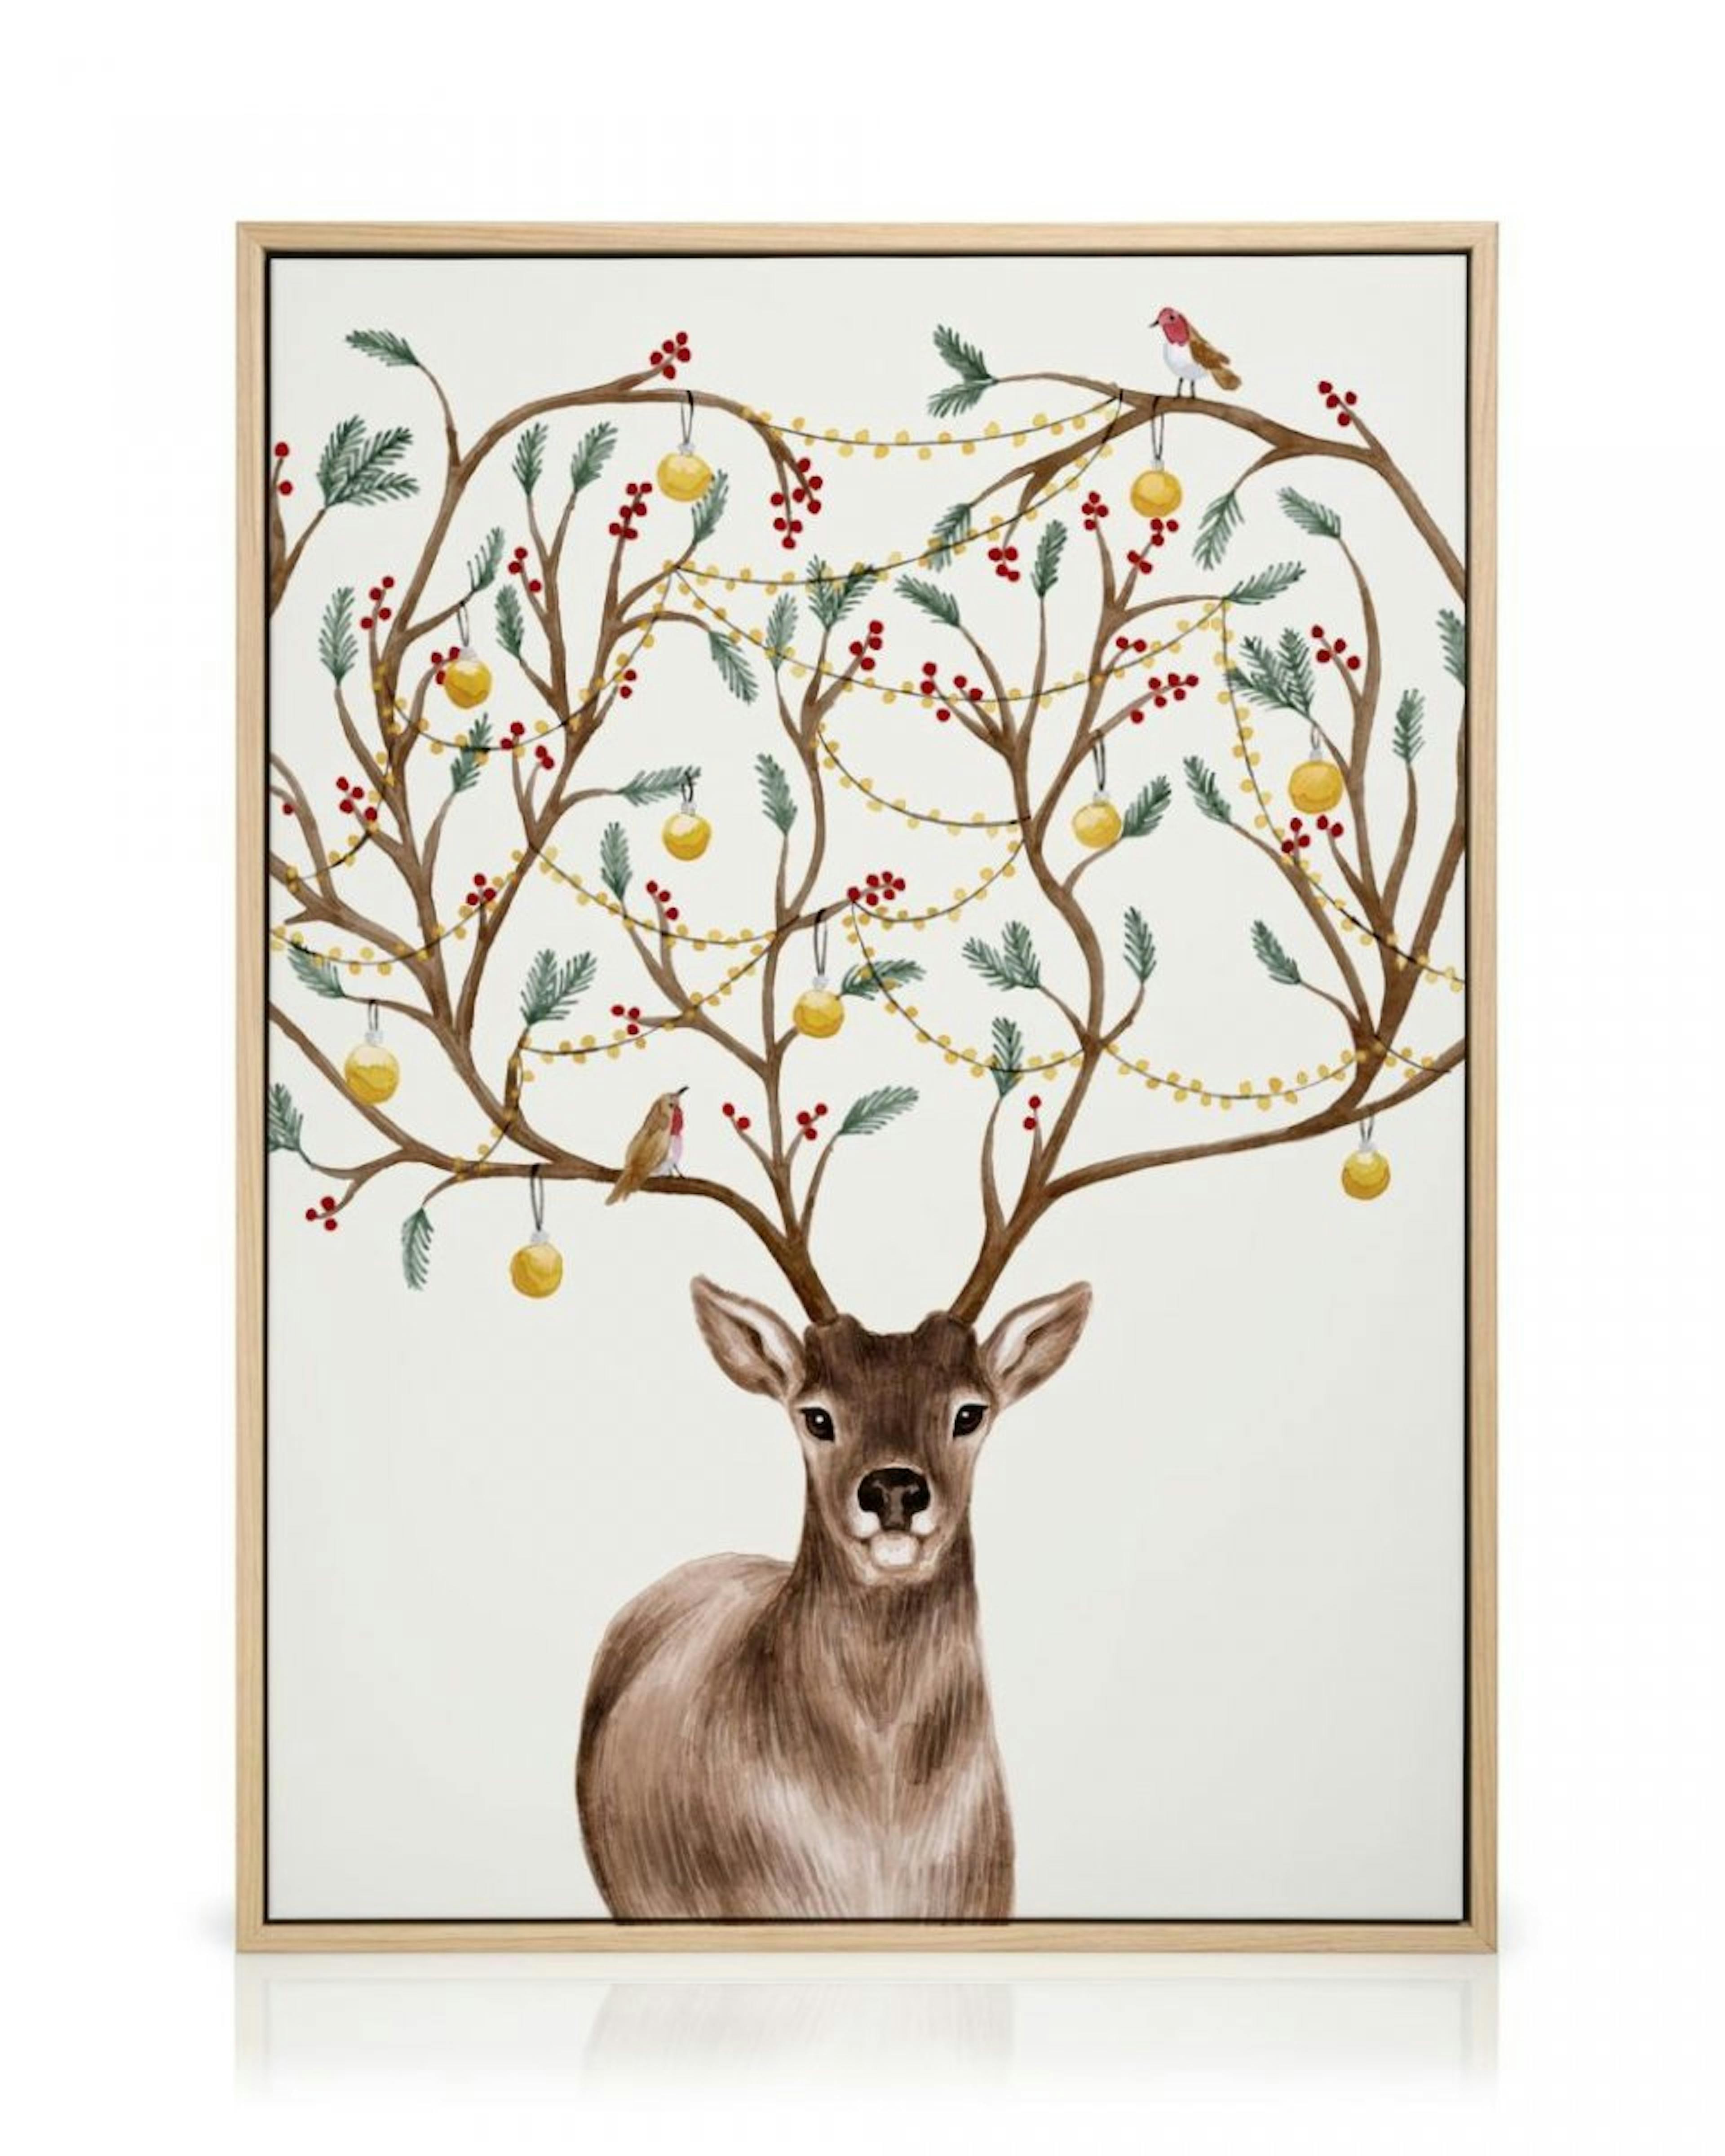 Decorated Deer Obraz na płótnie thumbnail